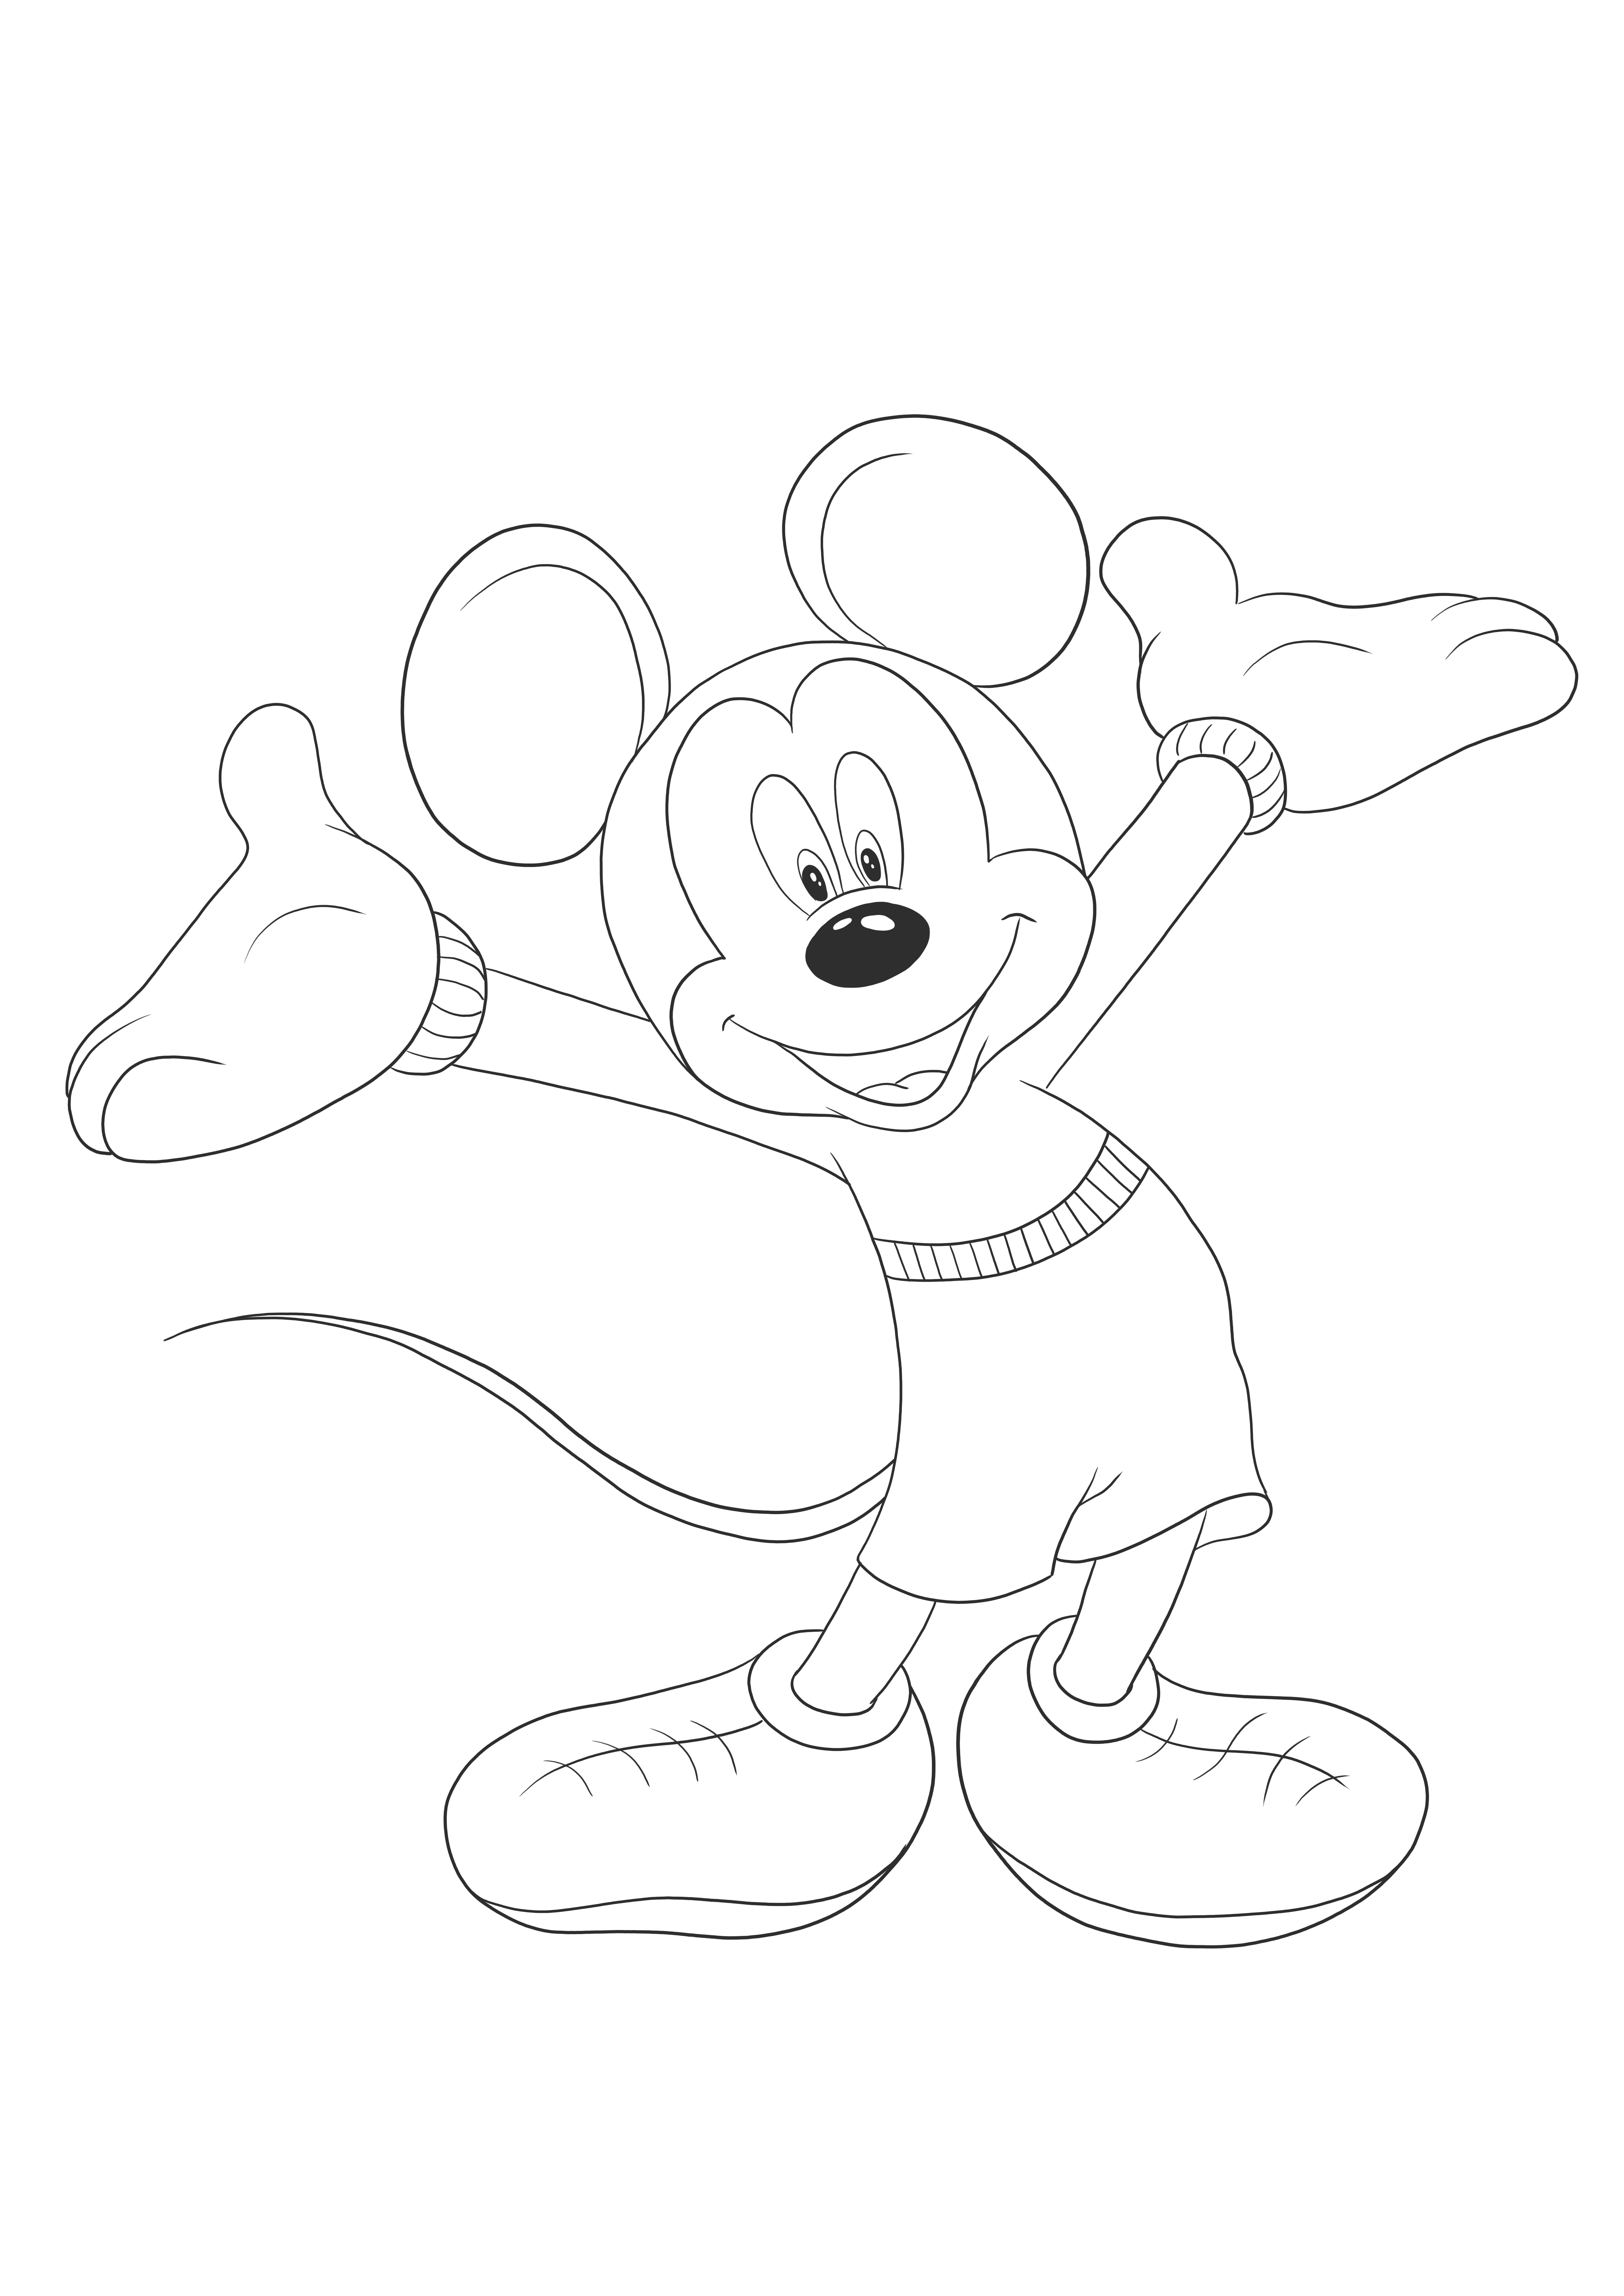 Szczęśliwa Myszka Mikey czeka na wydruk bez kolorowania